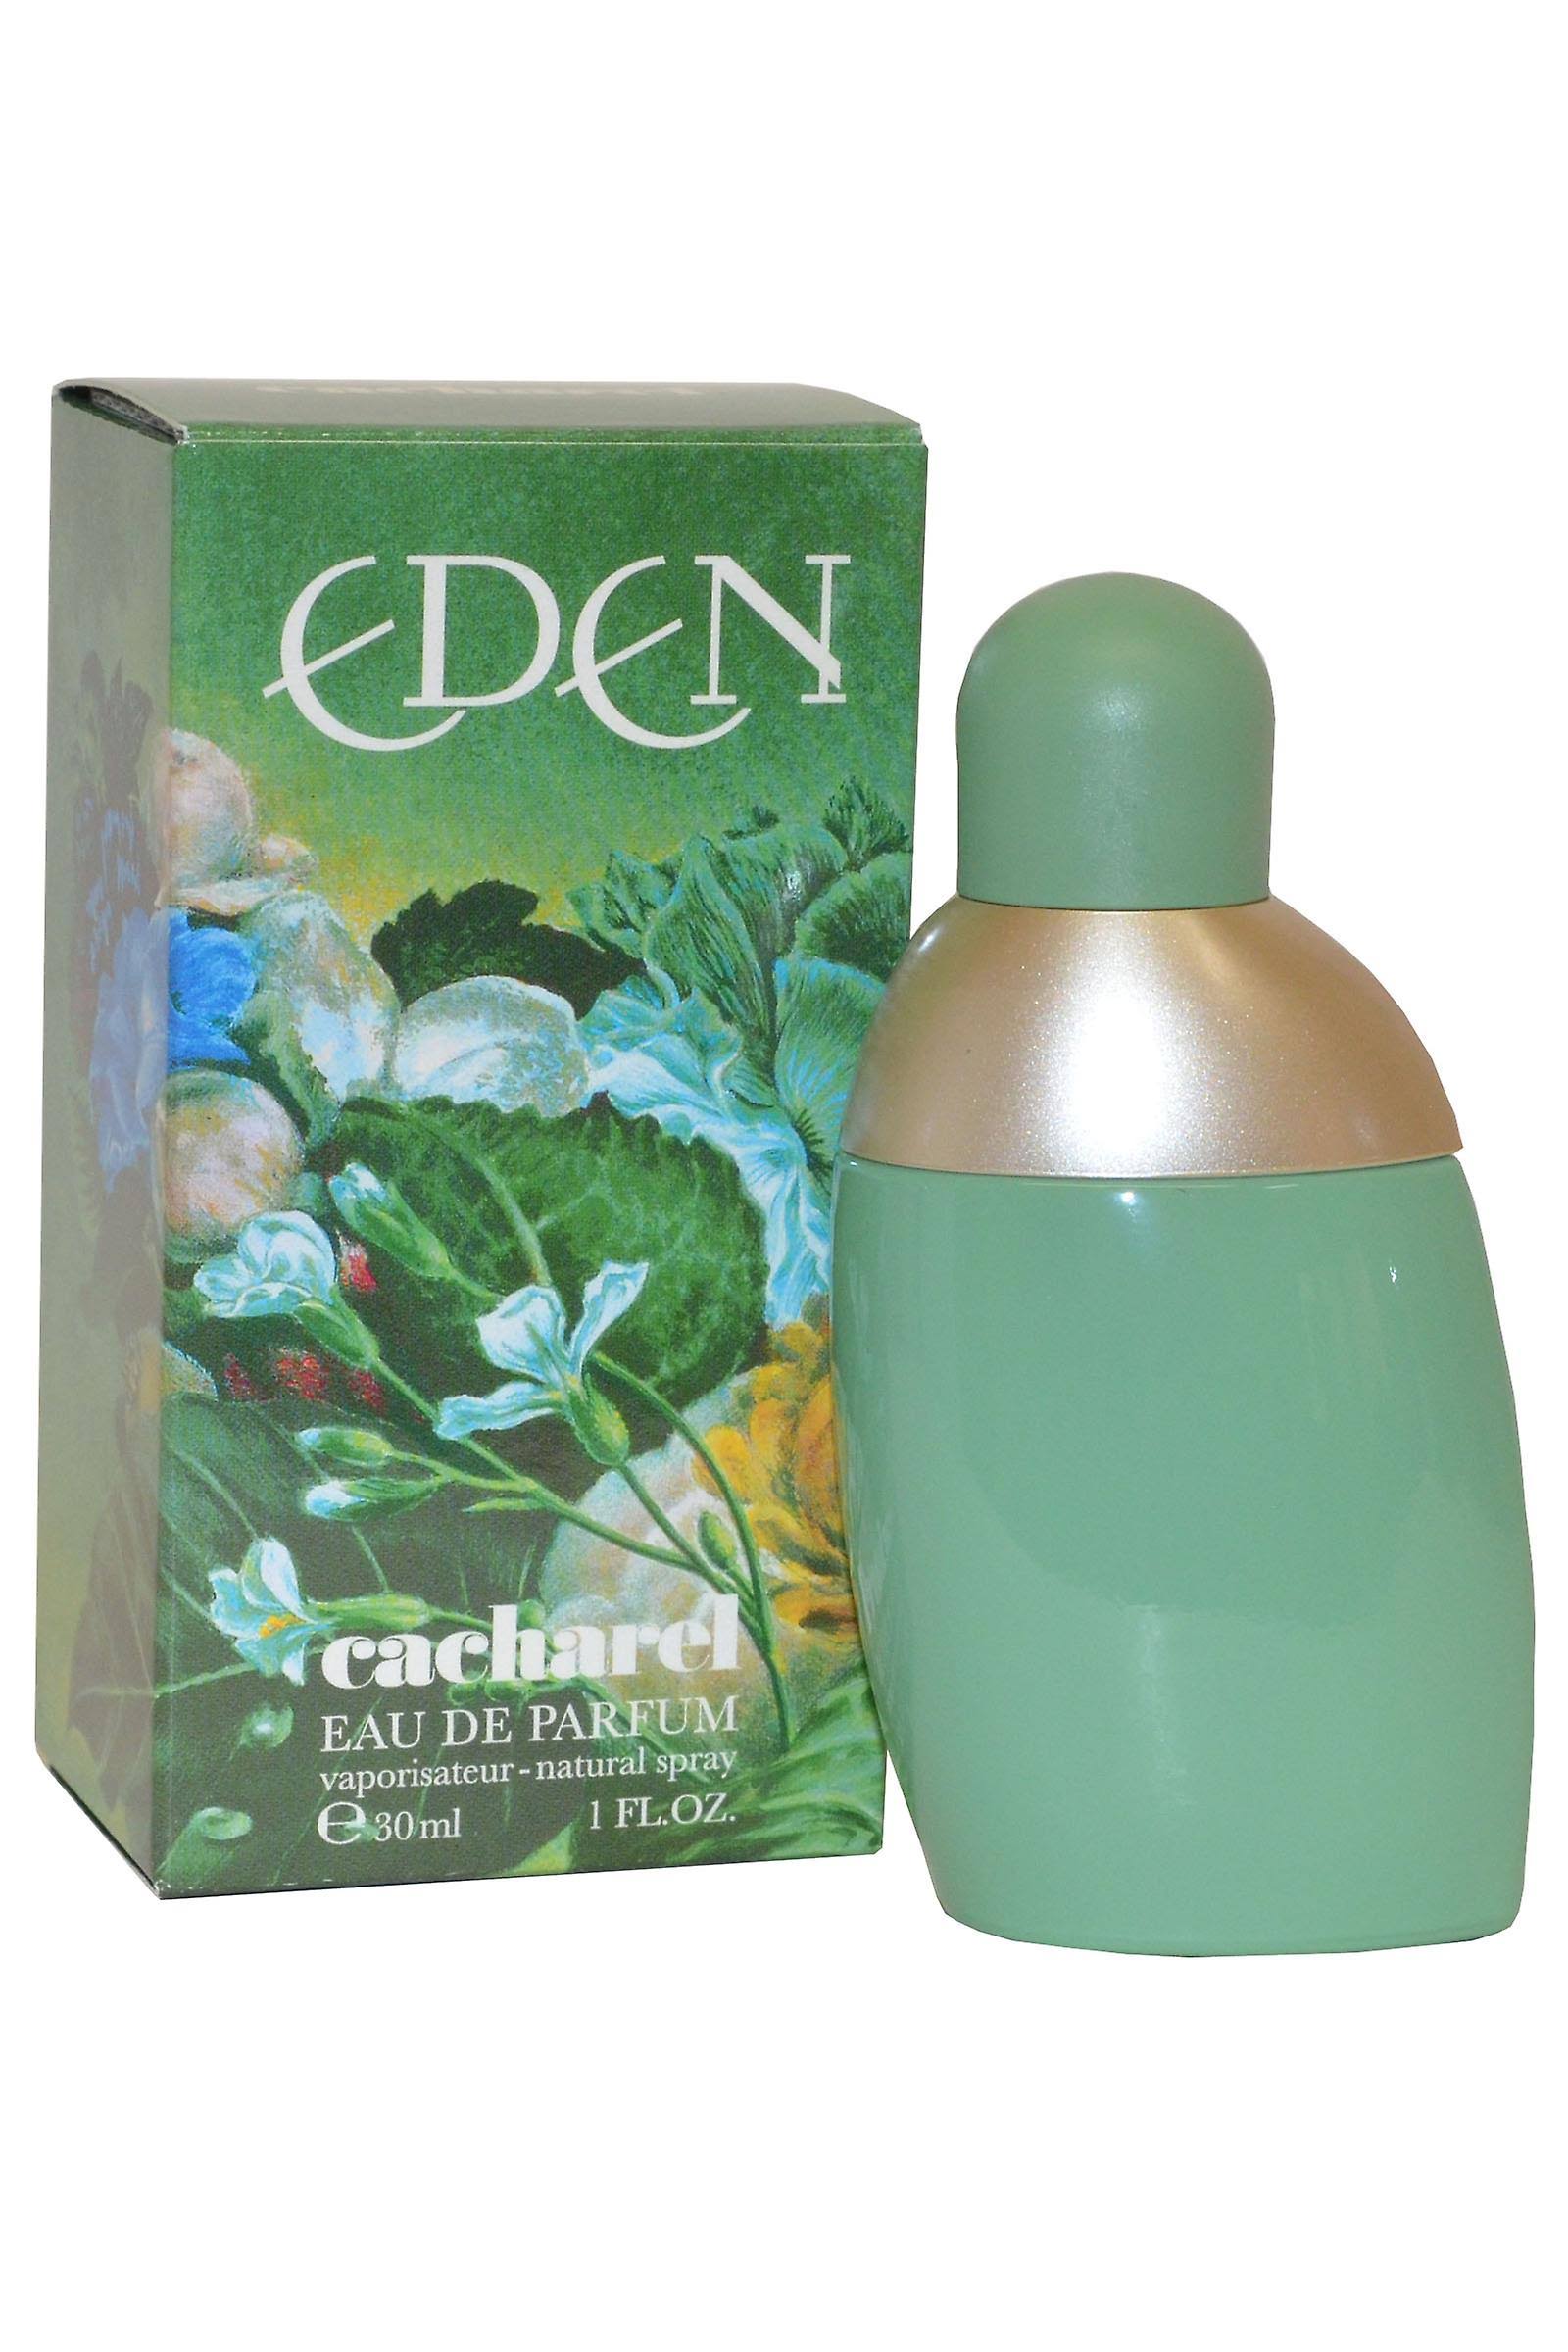 Eden Eau De Parfum Spray - Cacharel